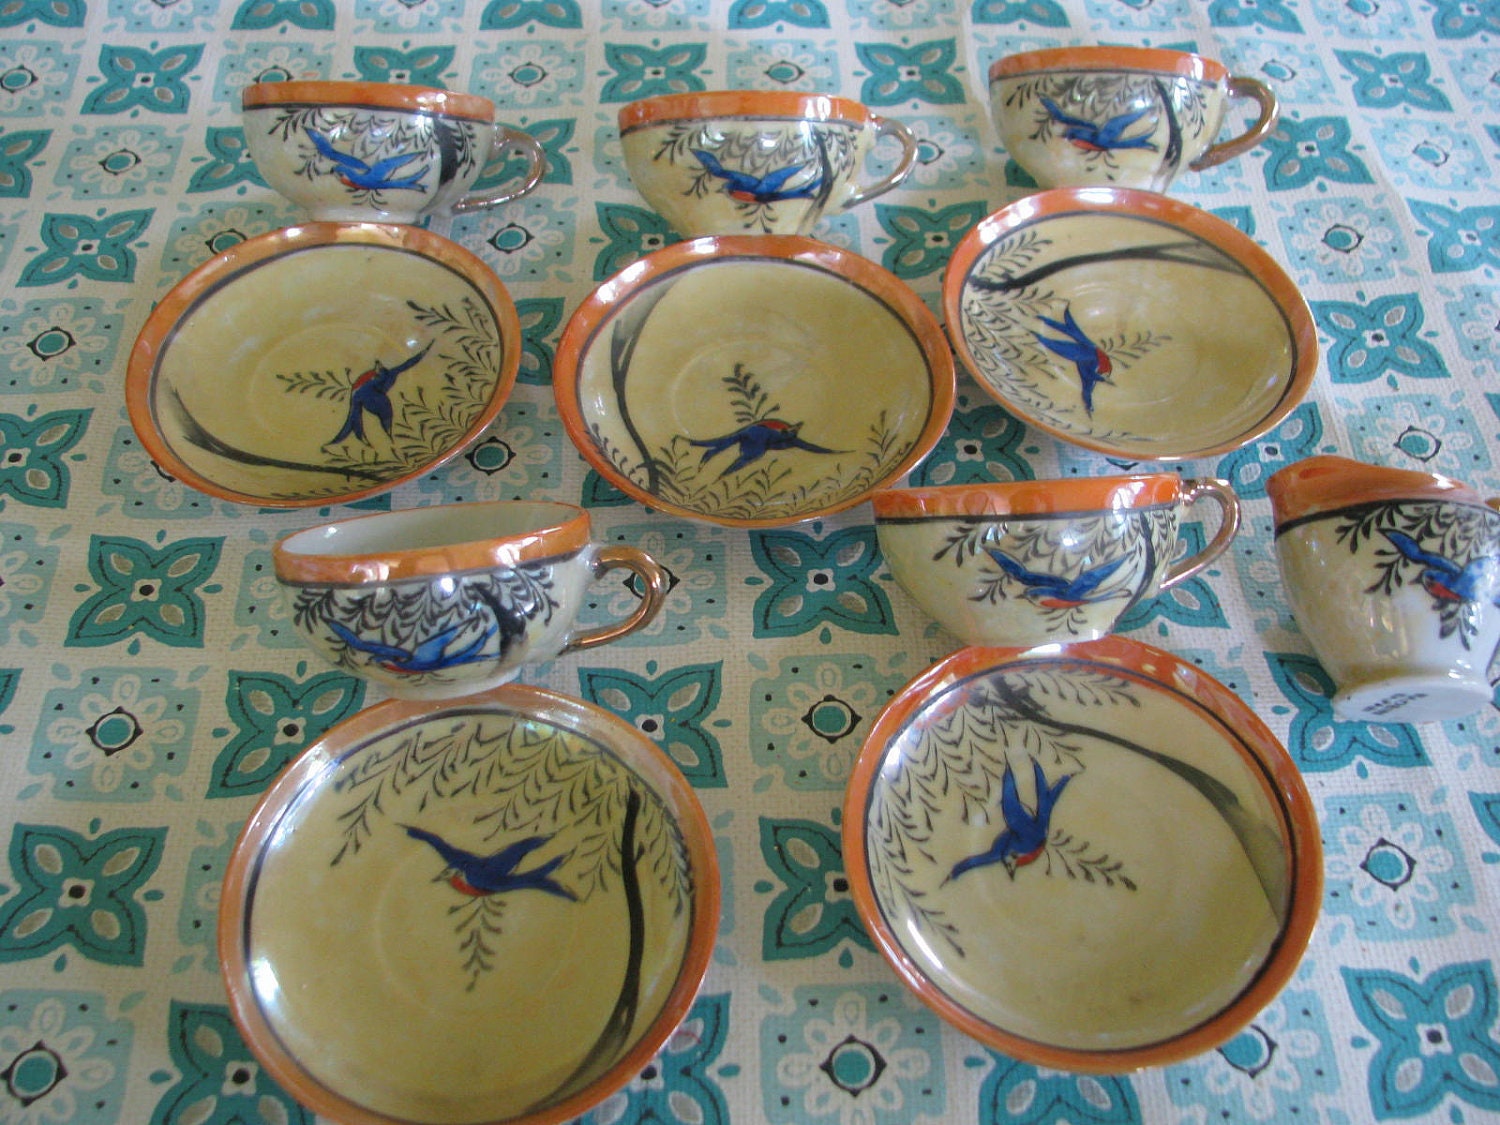 Fun Vintage Children's tea Set with birds - dimestorechic